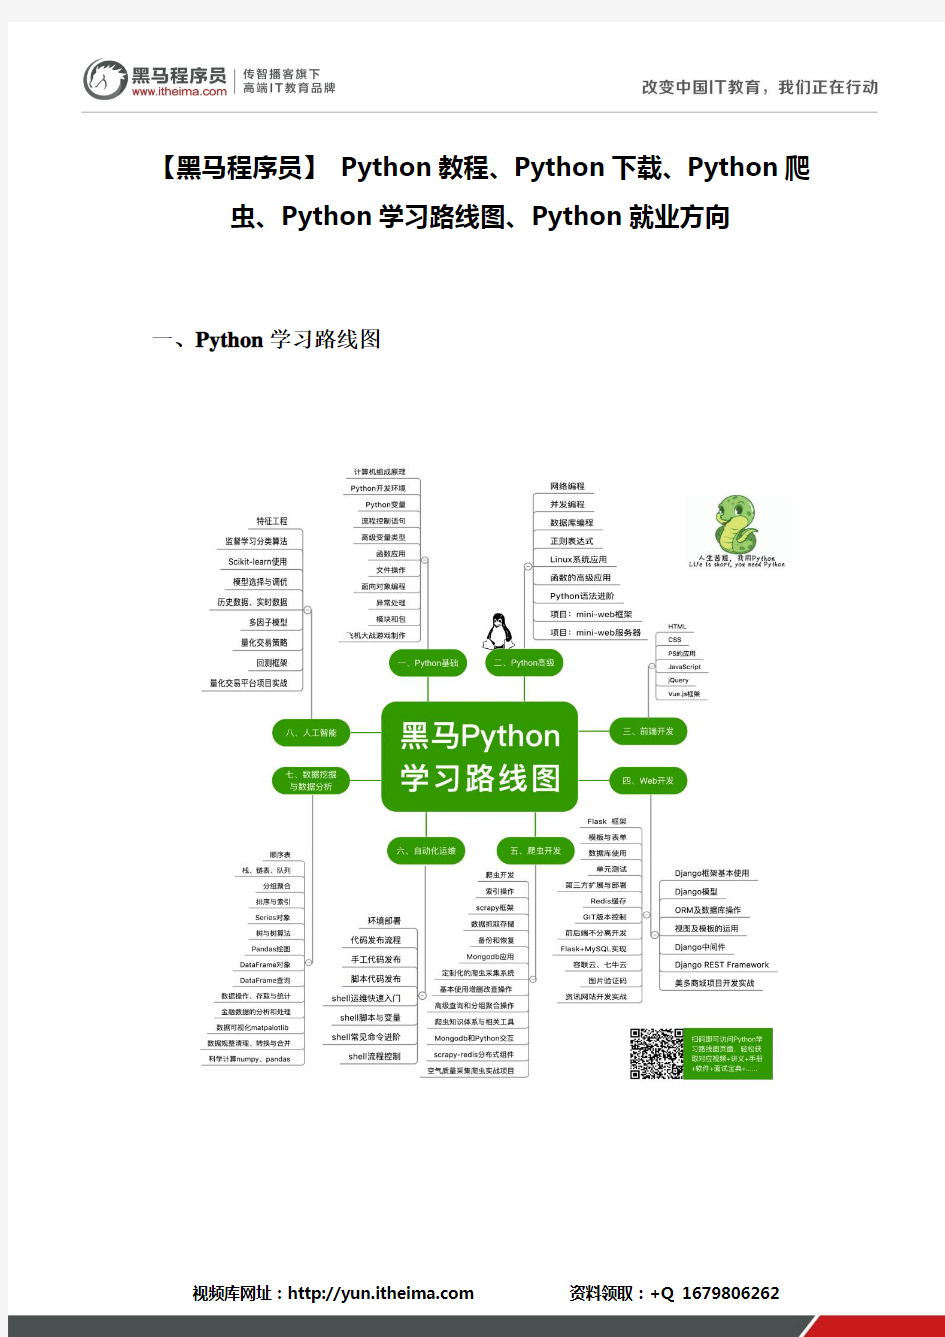 【黑马程序员】 Python教程、Python下载、Python爬虫、Python学习路线图、Python就业方向